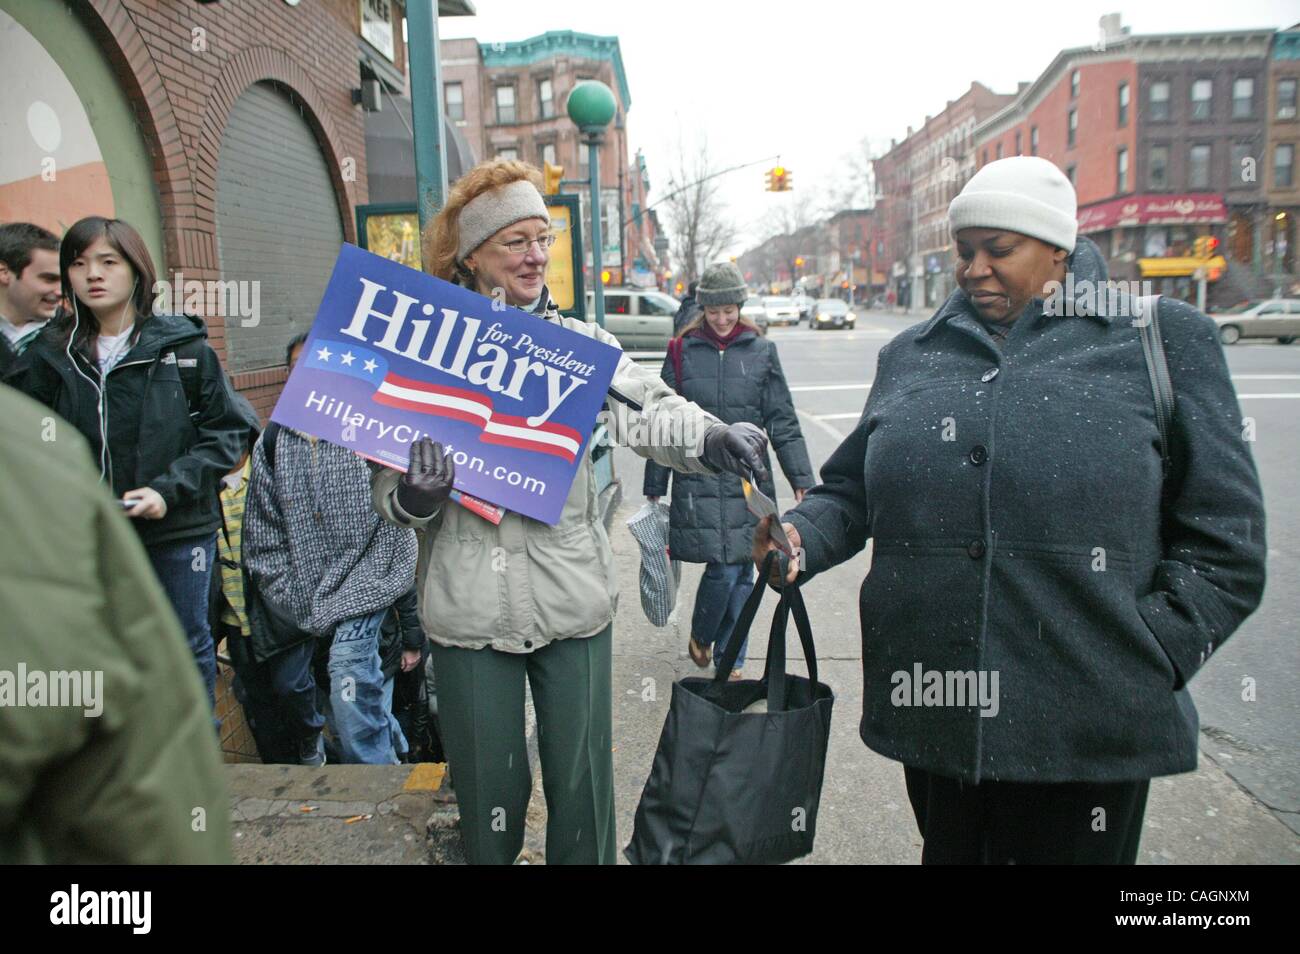 3 février 2008 - New York, New York, États-Unis - PO# 388 U.F.T. Président et membres du conseil de ville U.F.T inscrivez-vous membre Bill De Blasio distribuant des documents à l'appui d'Hillary Clinton à Brooklyn N.Y. une personne tenue de pro Obama affiche sur le coin opposé - 2008 2-4-08 .K56219B Ltée(Image Crédit : Â© Bruc Banque D'Images